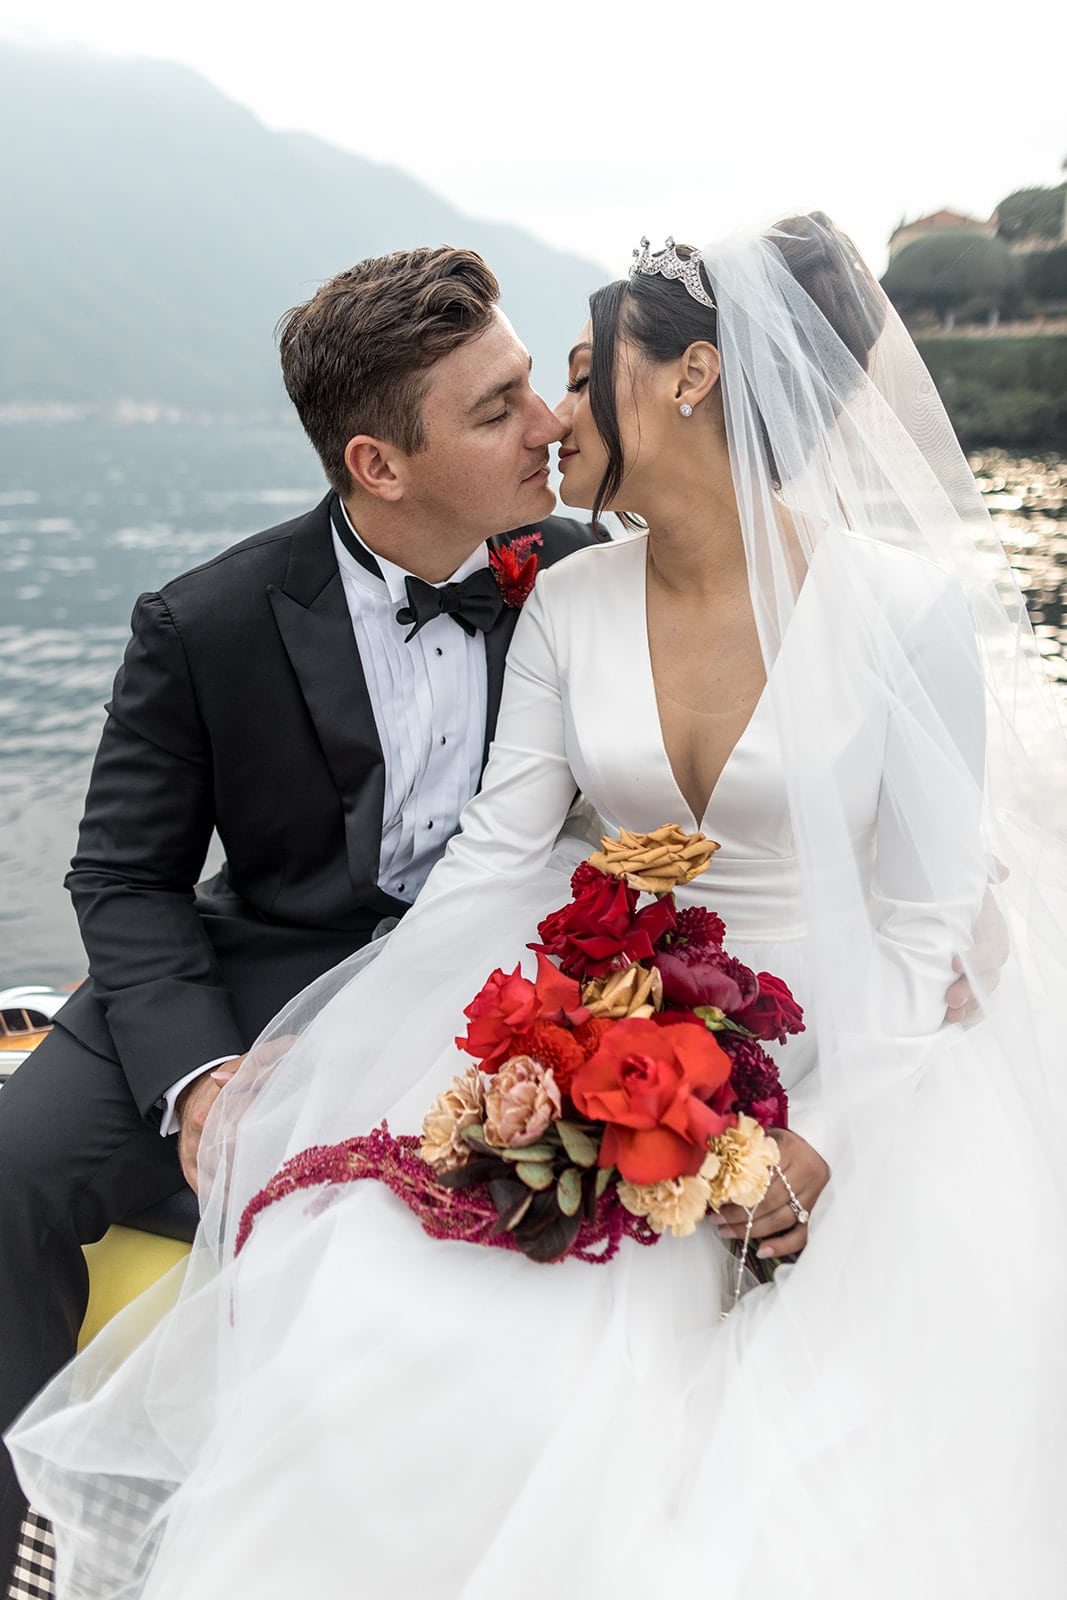 Bride and groom kiss on boat on Lake Como